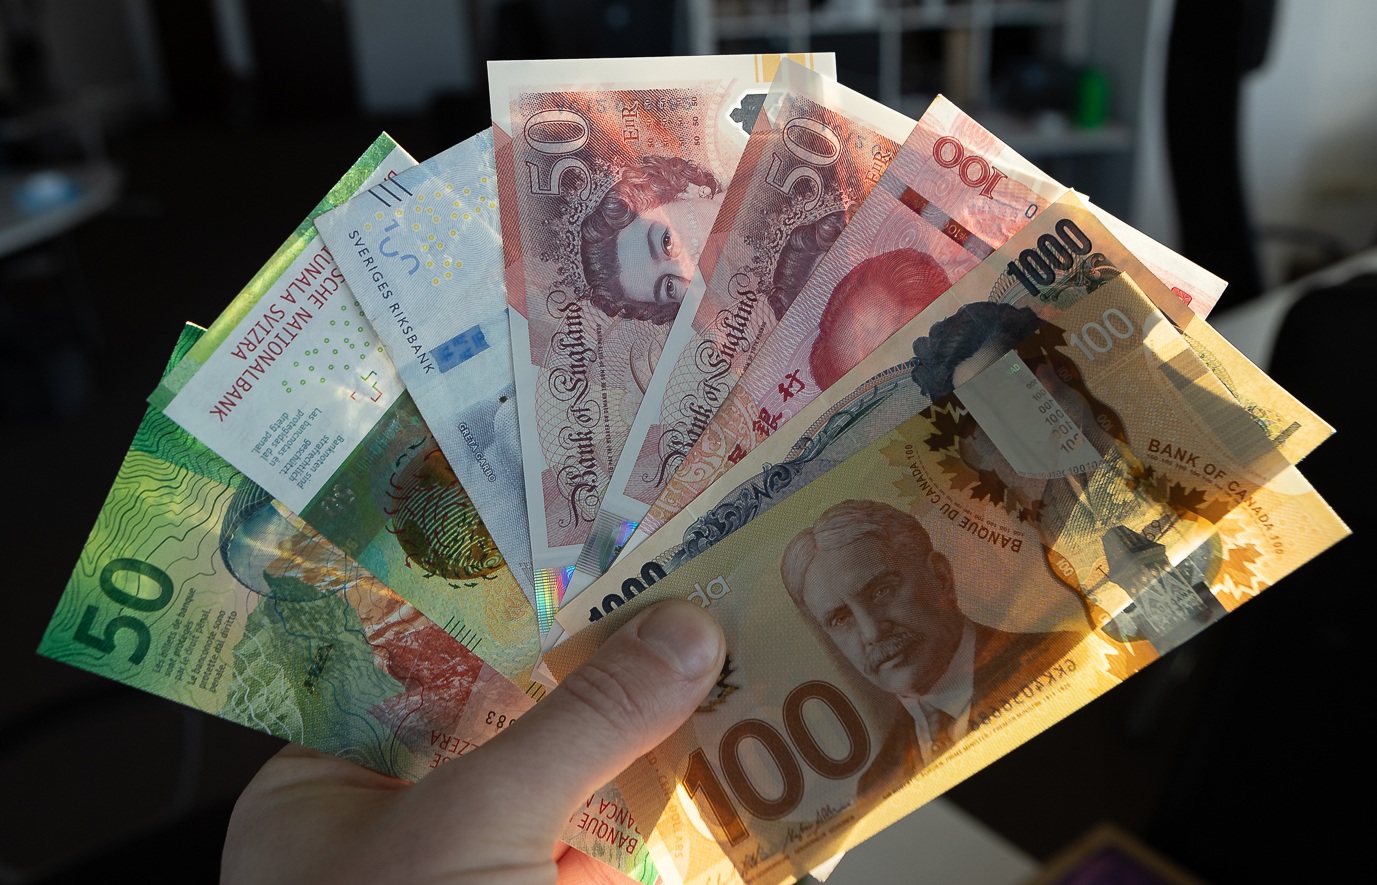 Долар та євро більше не в моді: українці ринулись скупати іншу валюту